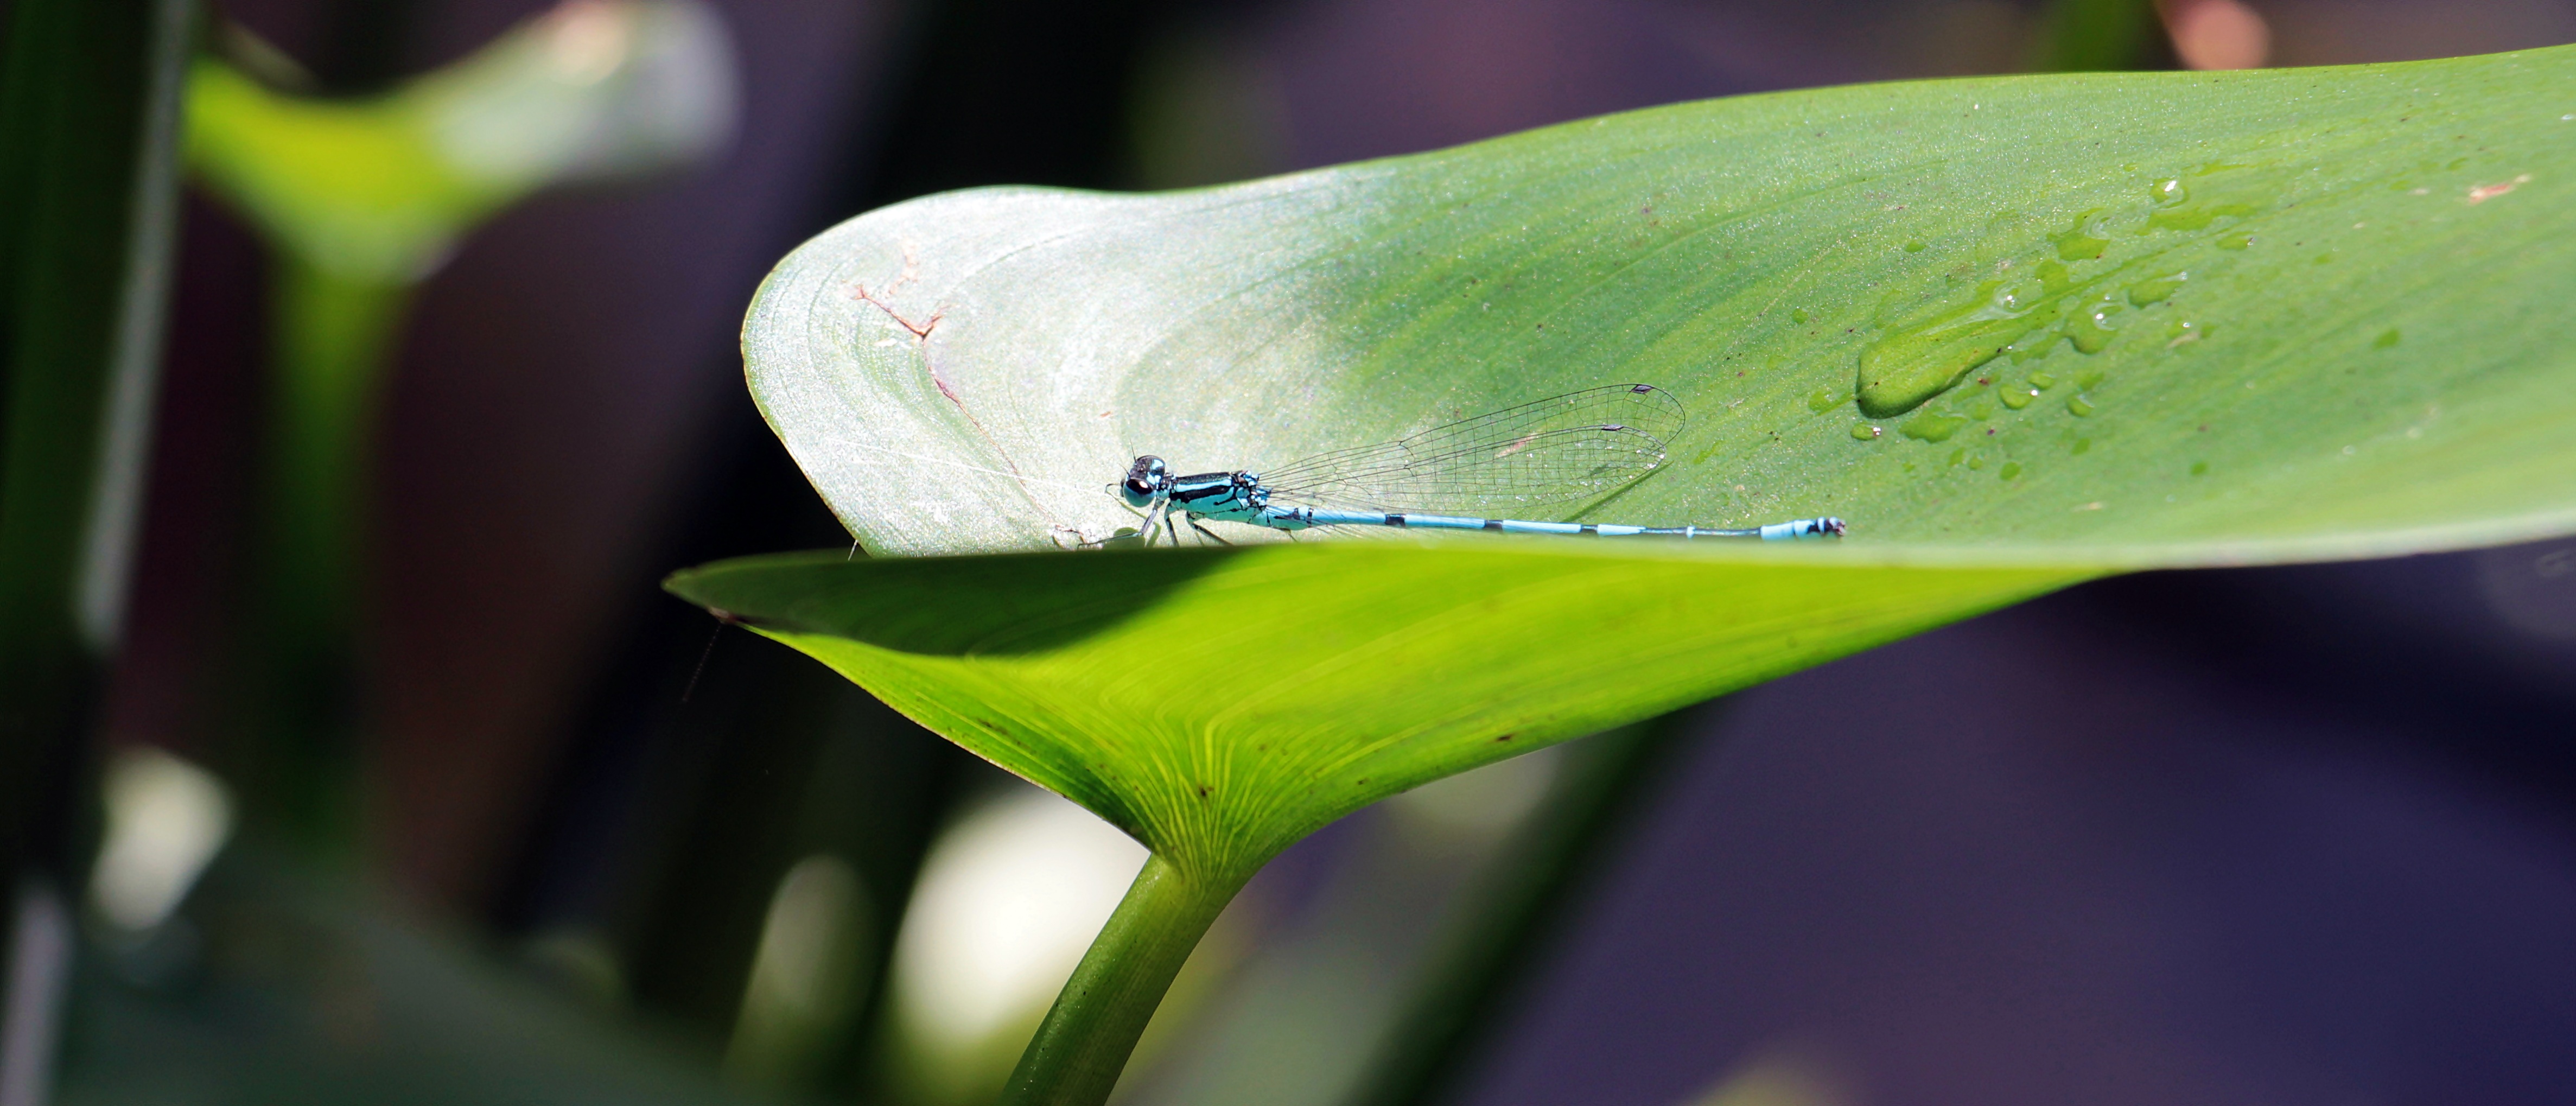 Macro dragonfly photo